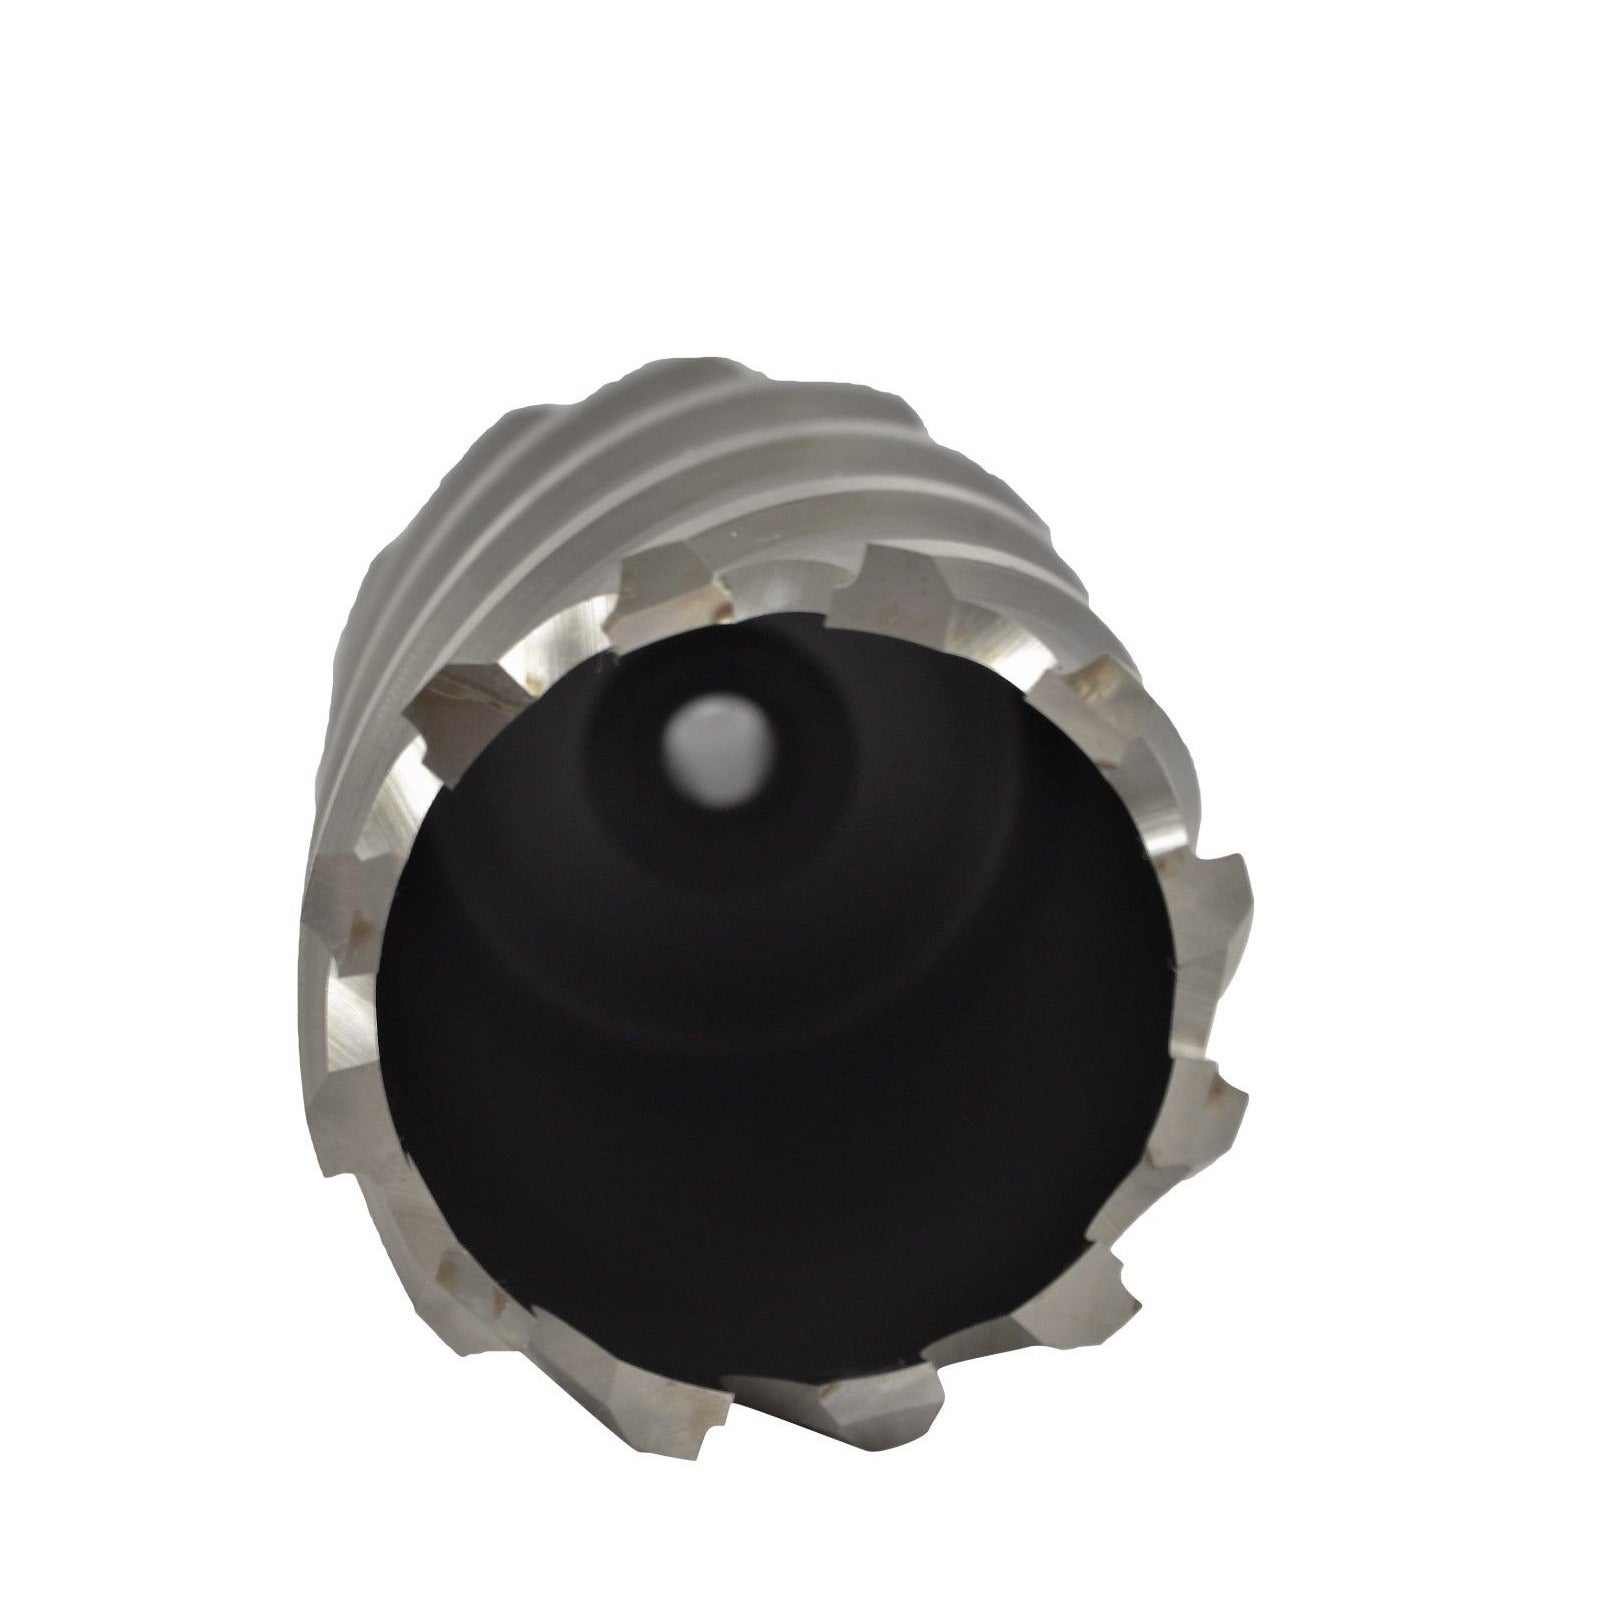 48x50 mm HSS Annular Broach Cutter ; Magnetic Drill ; Rotabroach ; Universal Shank